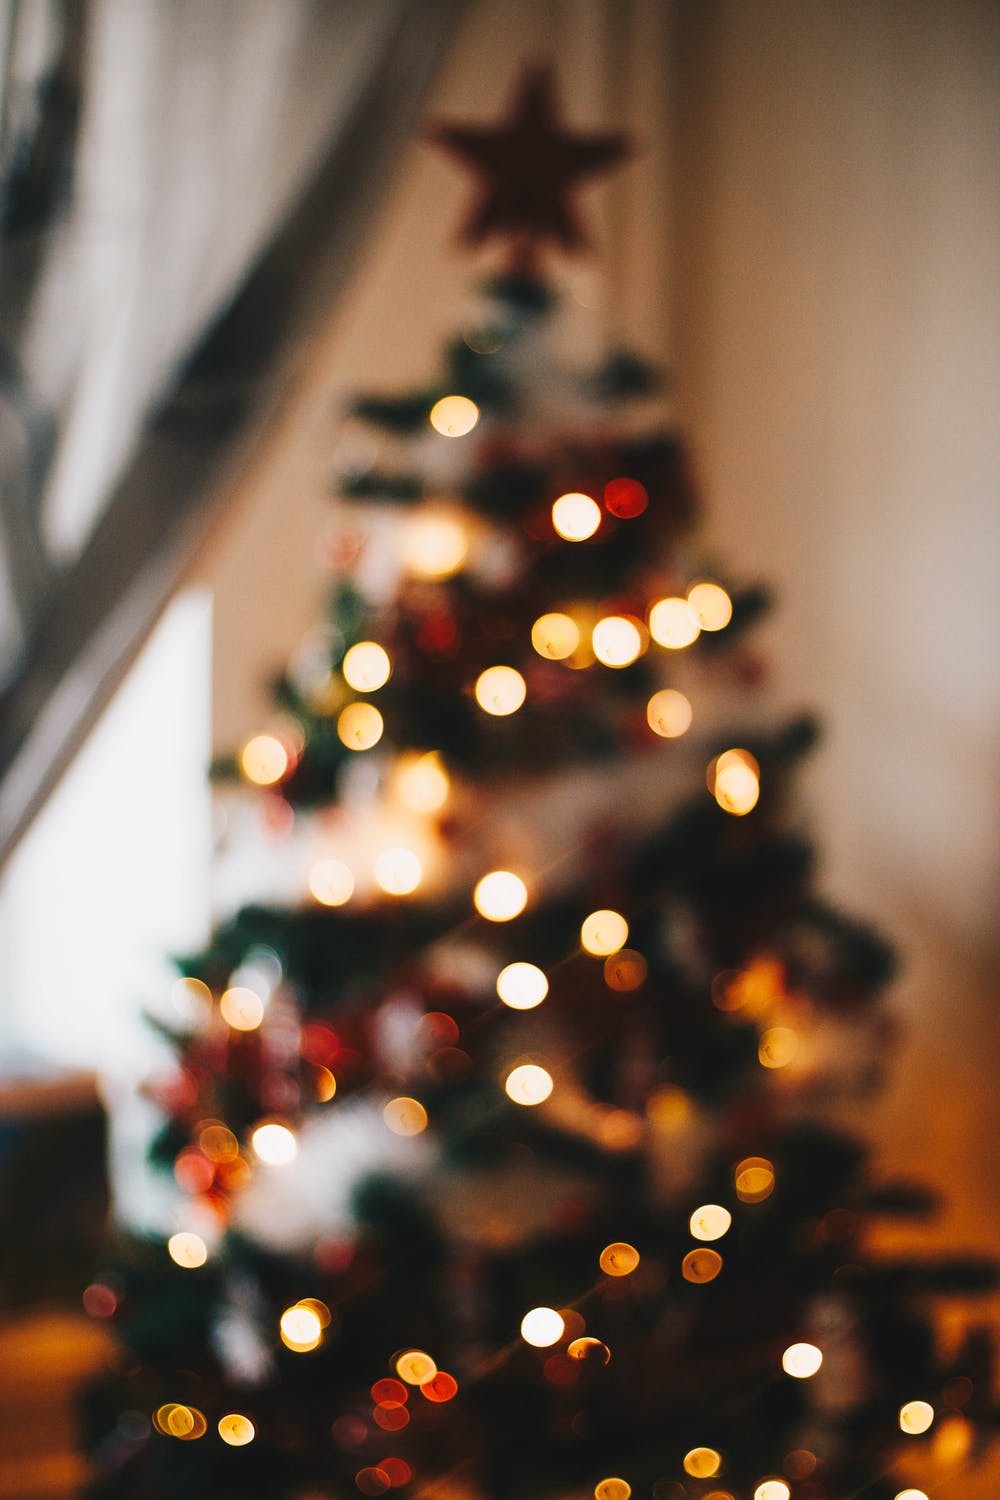 Hãy tìm hiểu về truyền thống Giáng sinh của công ty Marie-Chantal qua những chia sẻ thú vị và cảm động. Ấm áp, tình cảm và đầy ý nghĩa, điều này sẽ giúp bạn hiểu rõ hơn về những giá trị của lễ hội và cũng là cách để chuẩn bị cho một mùa lễ tràn đầy hạnh phúc và tình yêu thương.